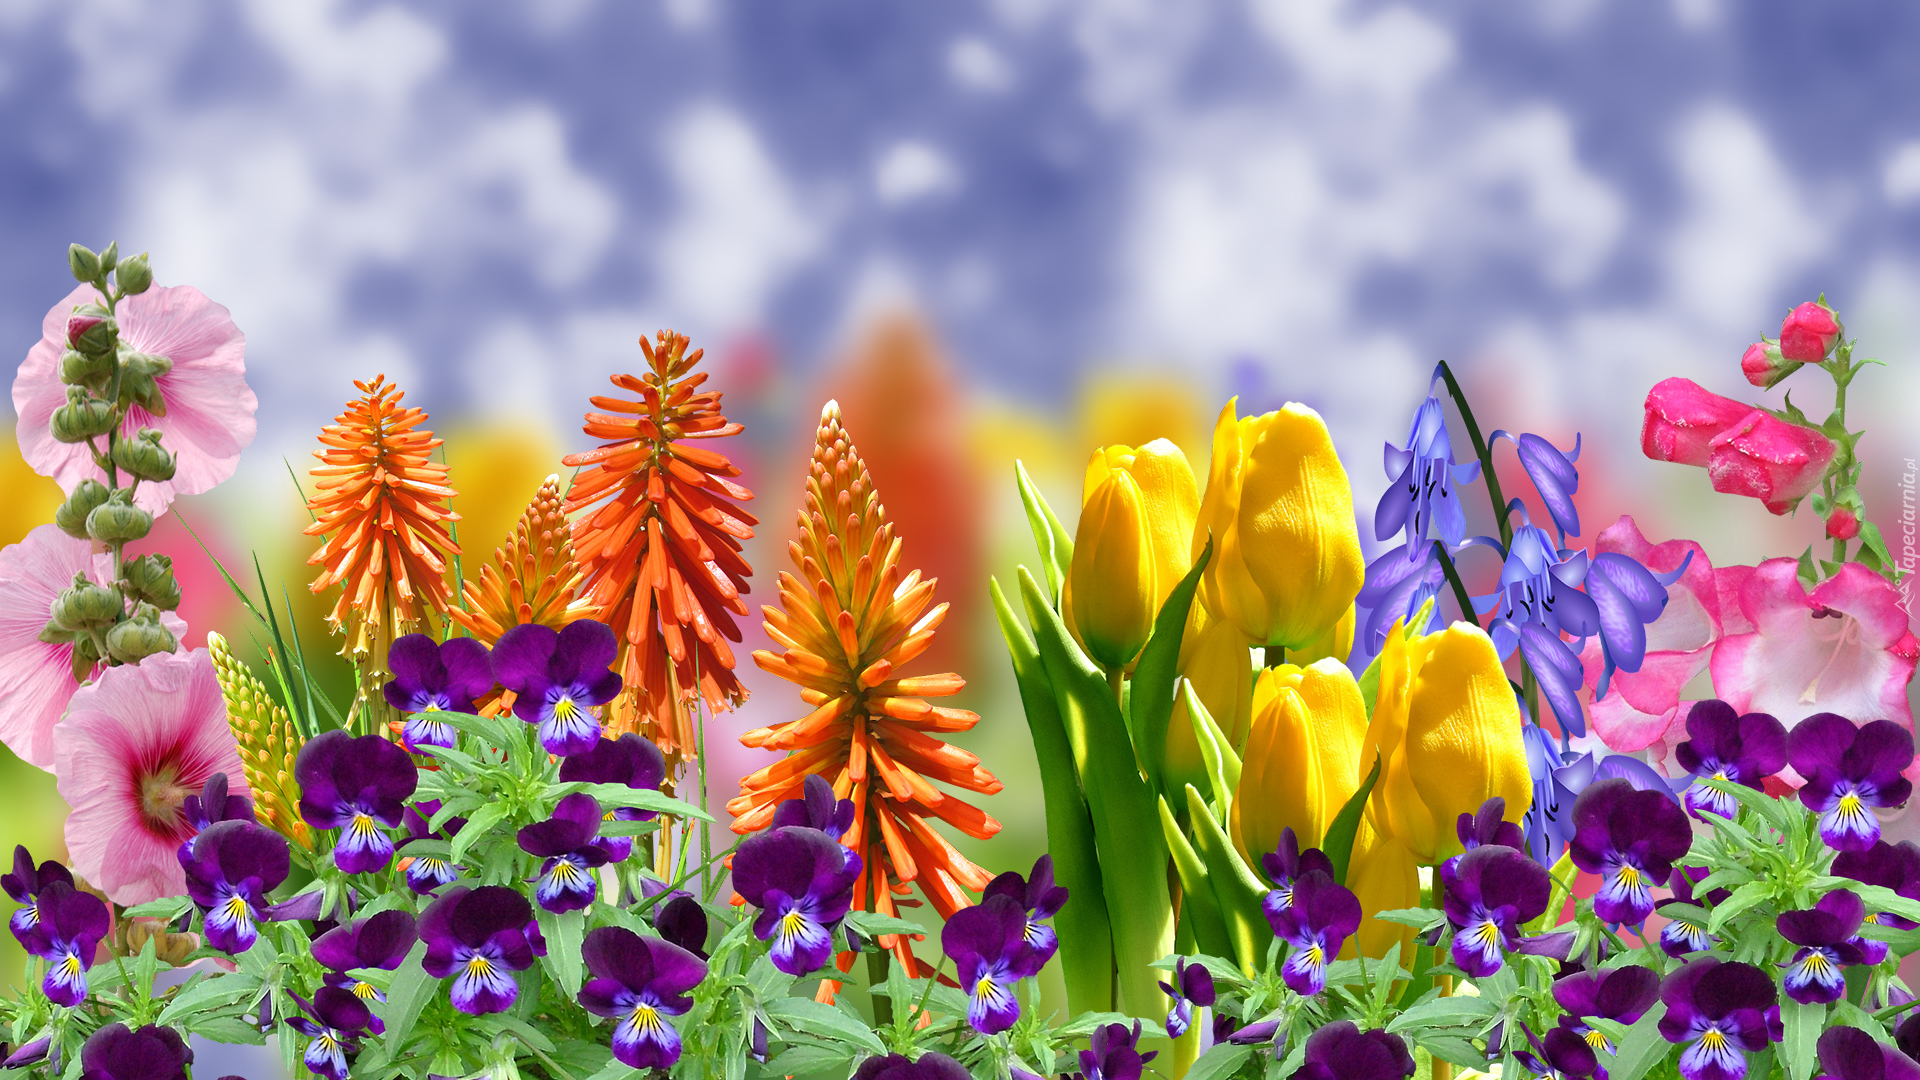 Kwiaty, Bratki, Tulipany, Trytoma groniasta, Malwa